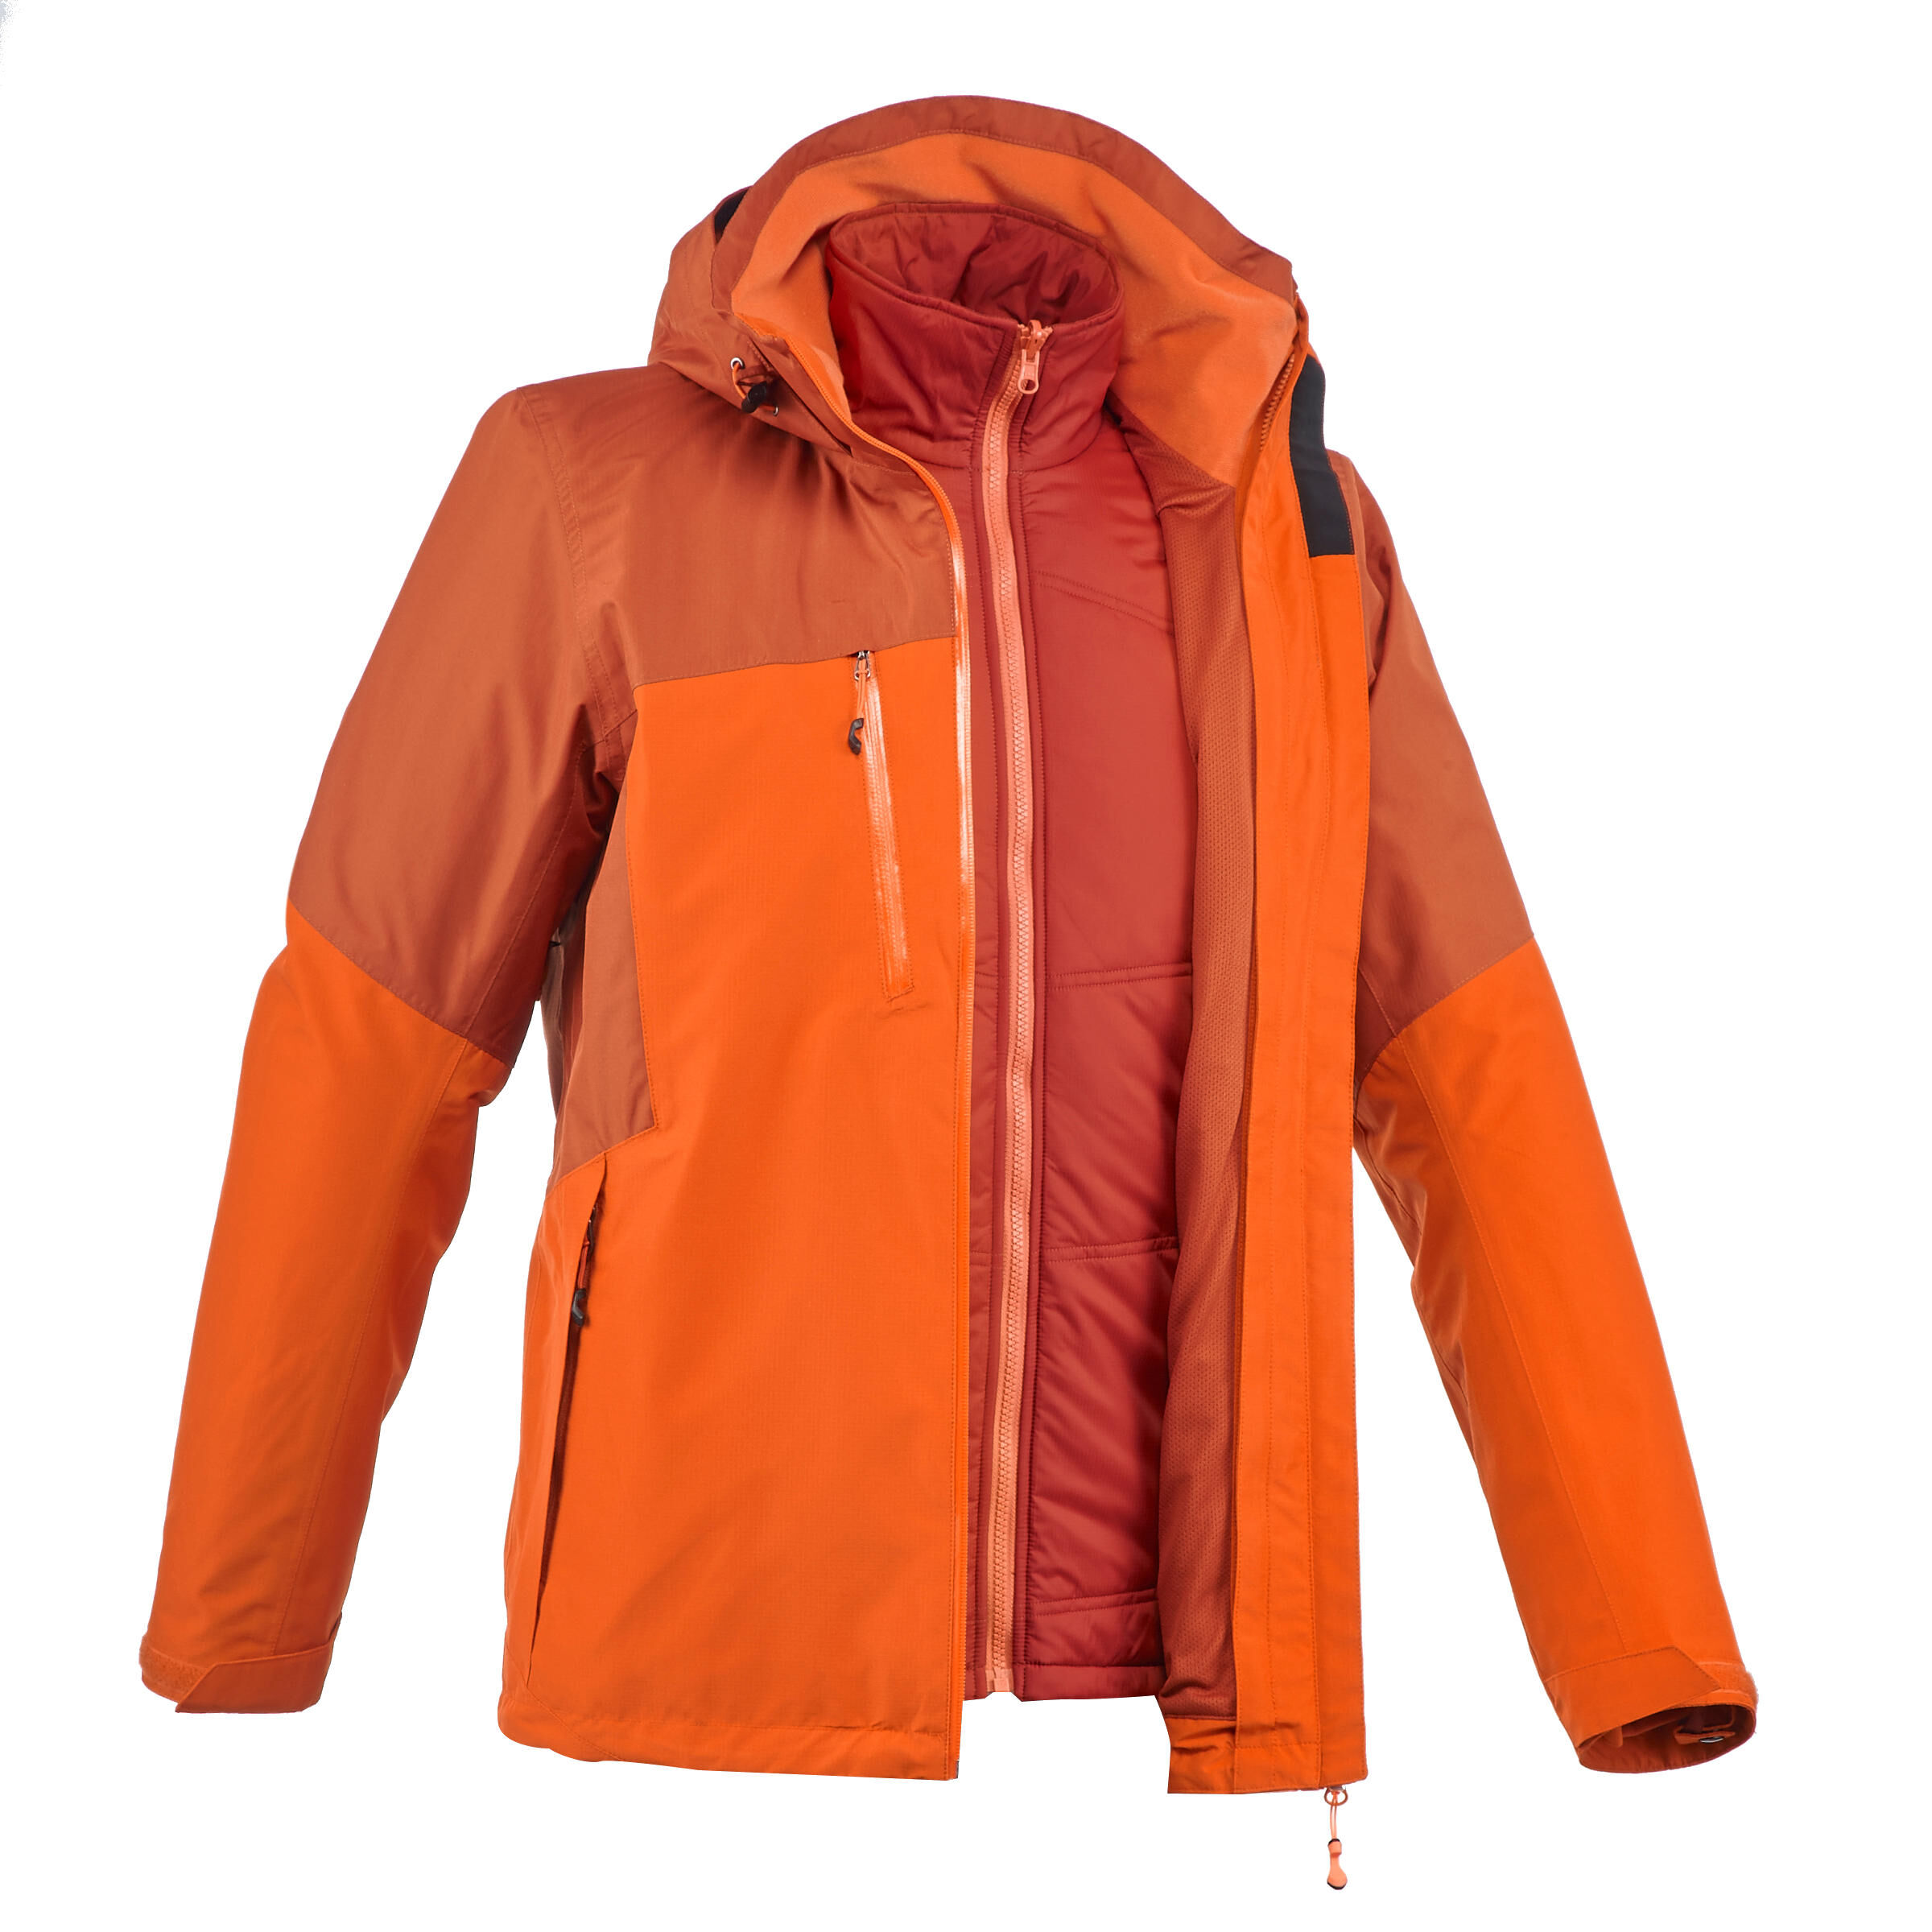 FORCLAZ Rainwarm 500 3-in-1 Men's Trekking Jacket - Orange